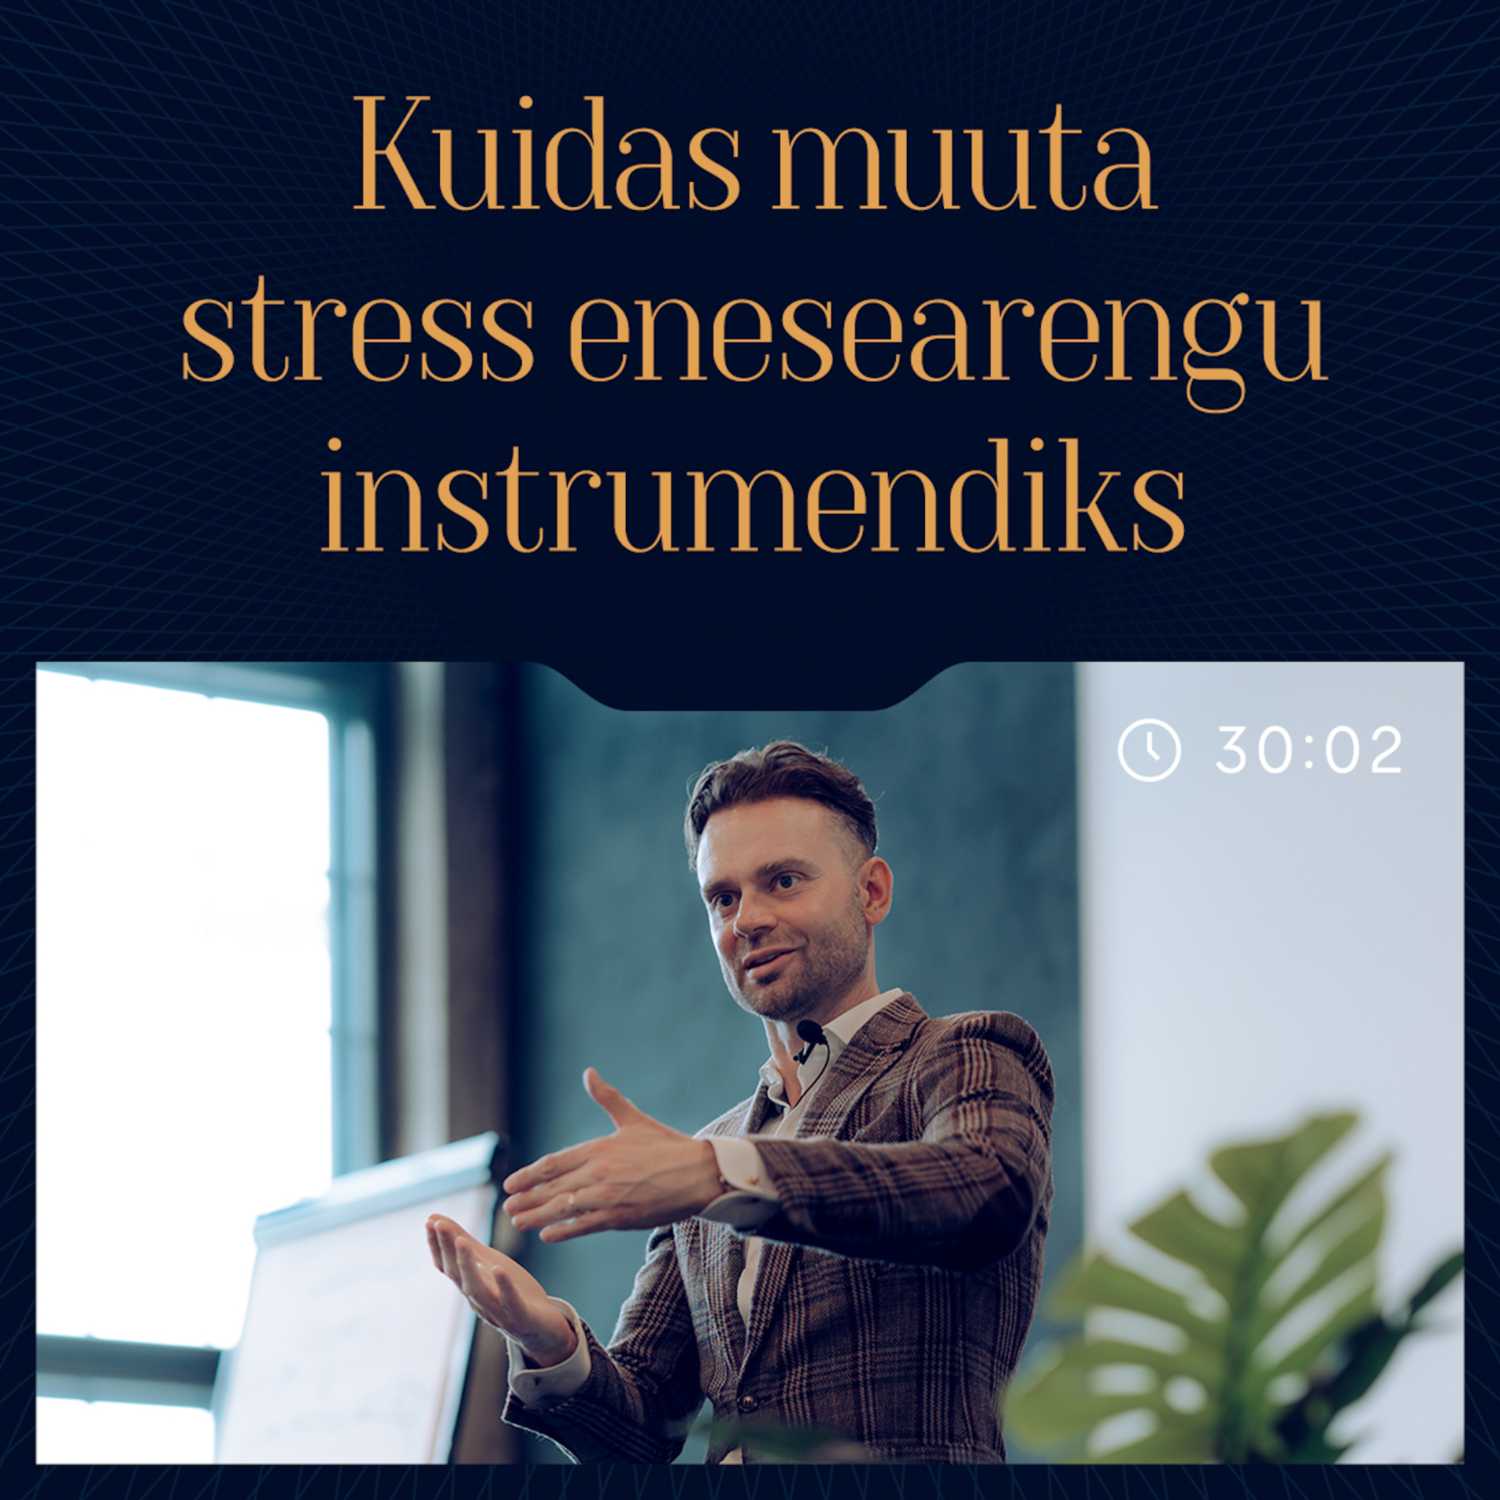 Kuidas muuta stress enesearengu instrumendiks?